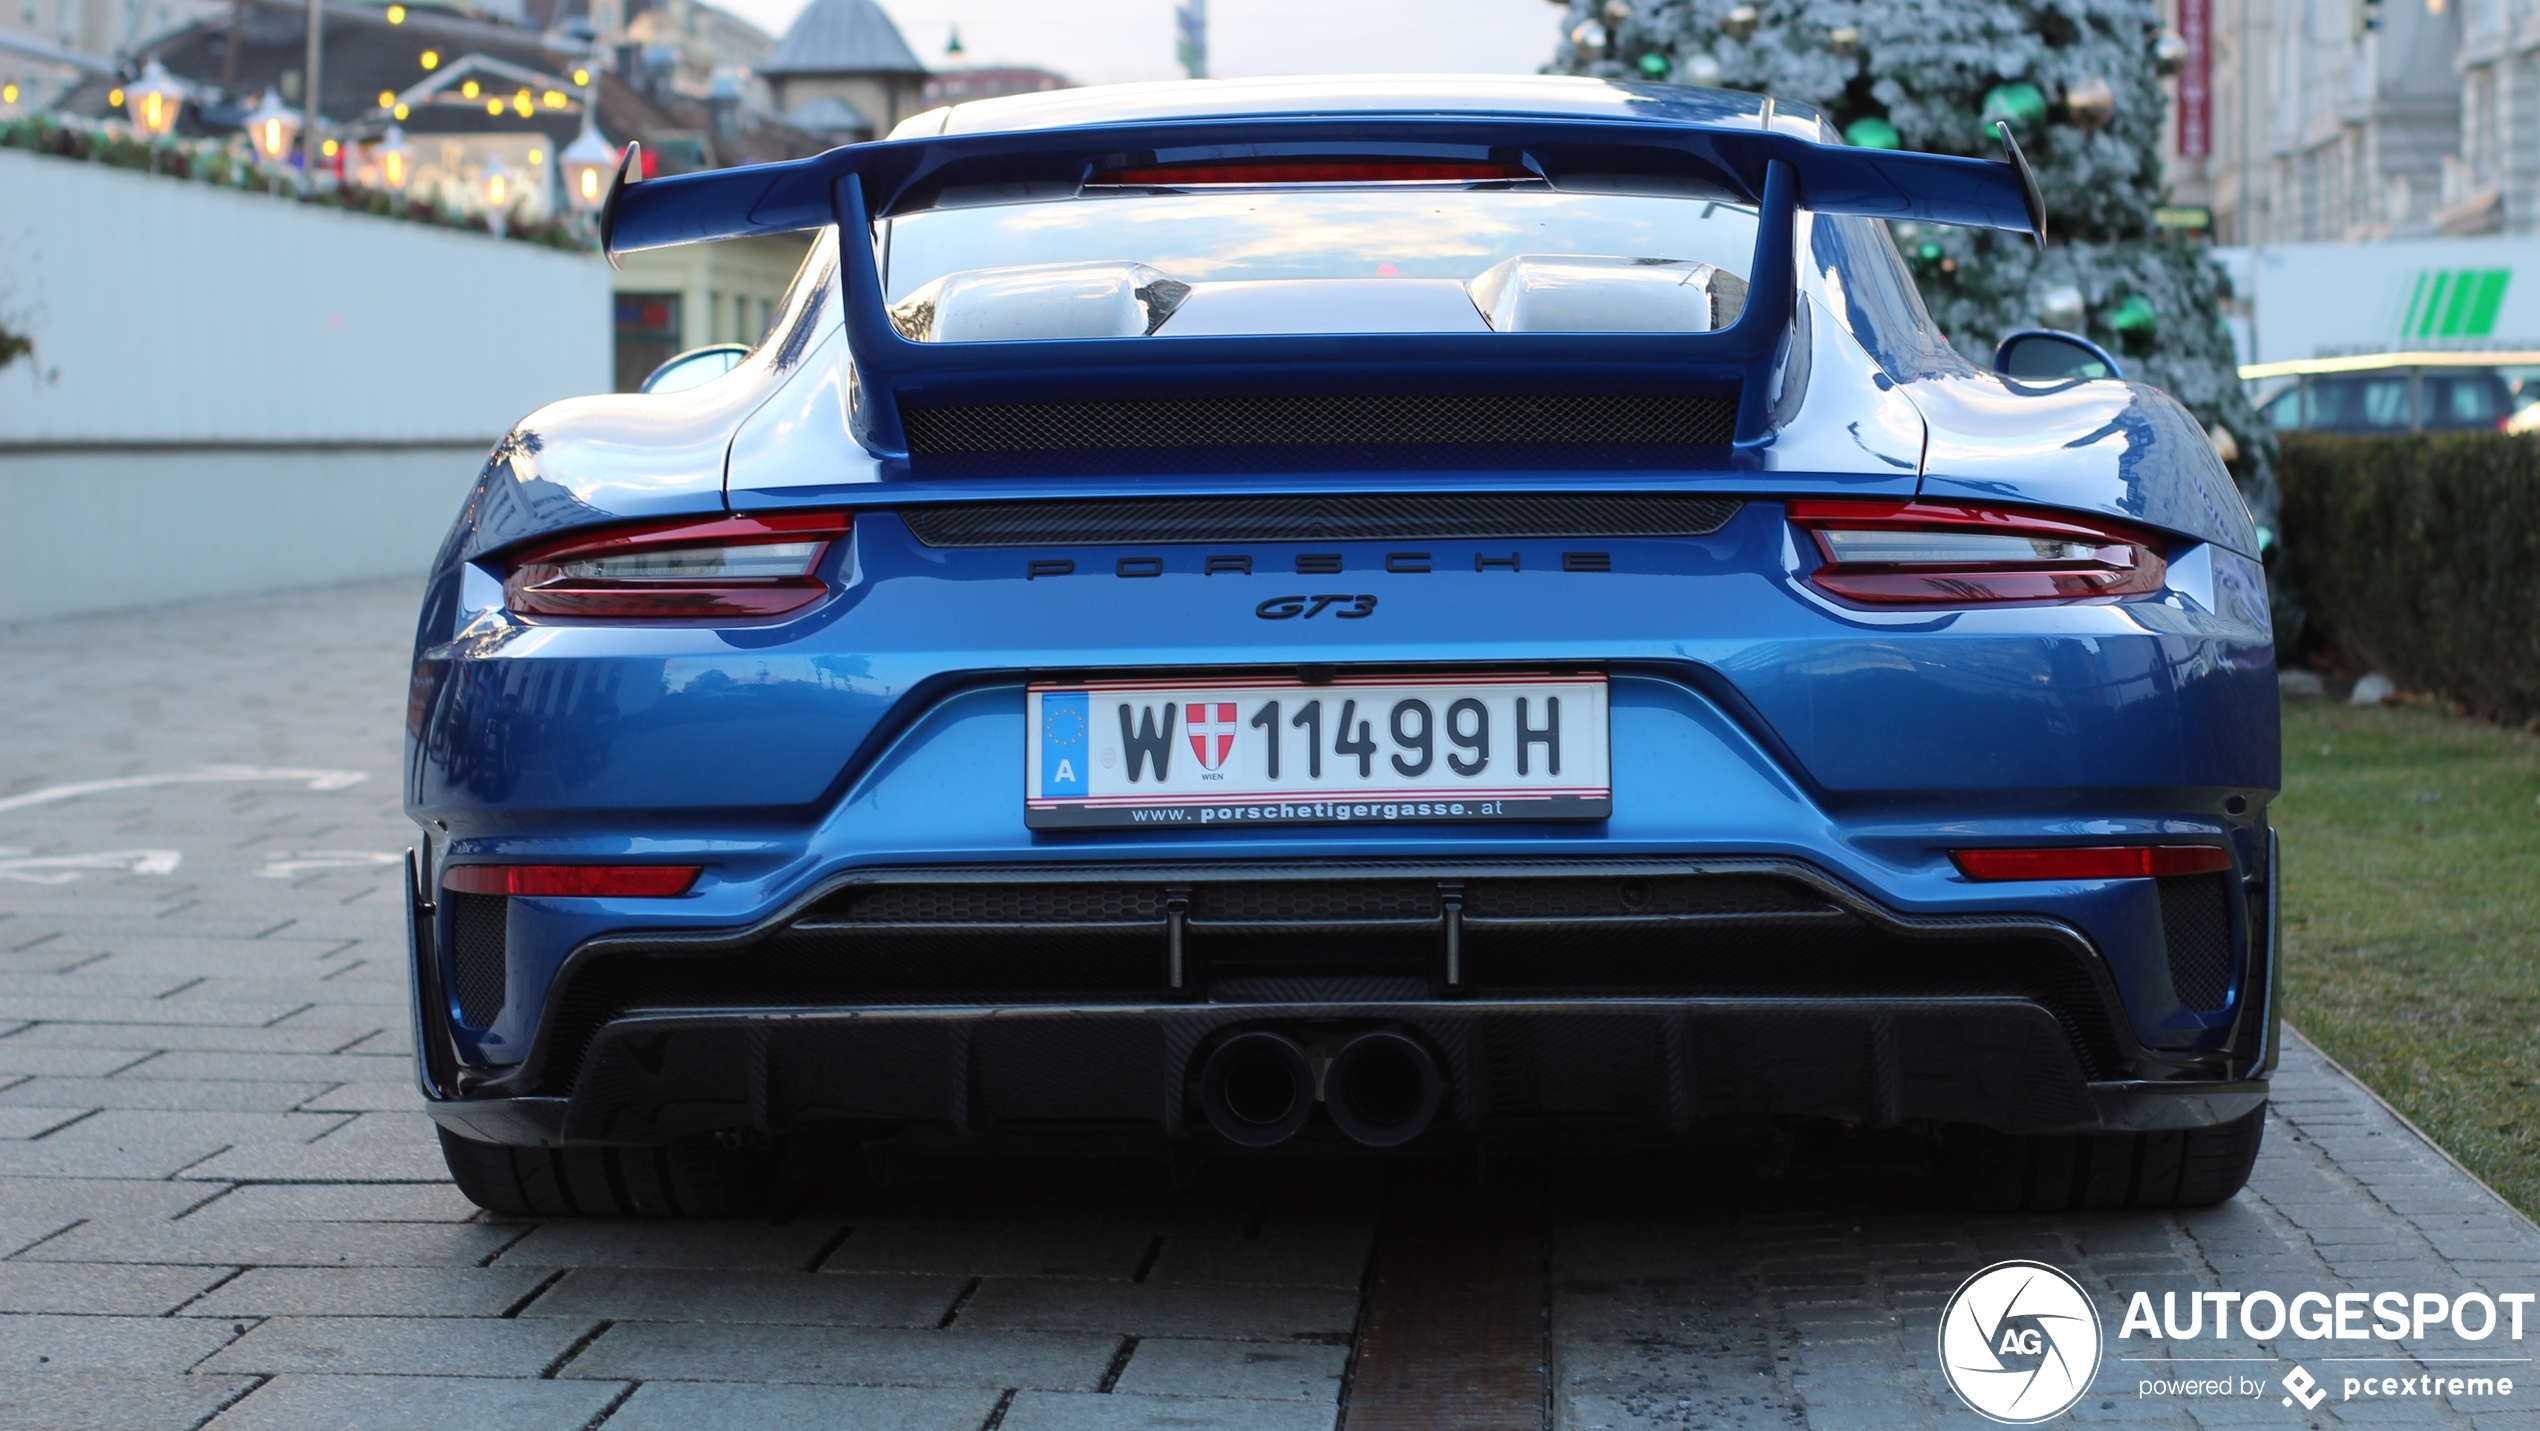 Porsche GT3 met bizarre bodykit gespot in Oostenrijk